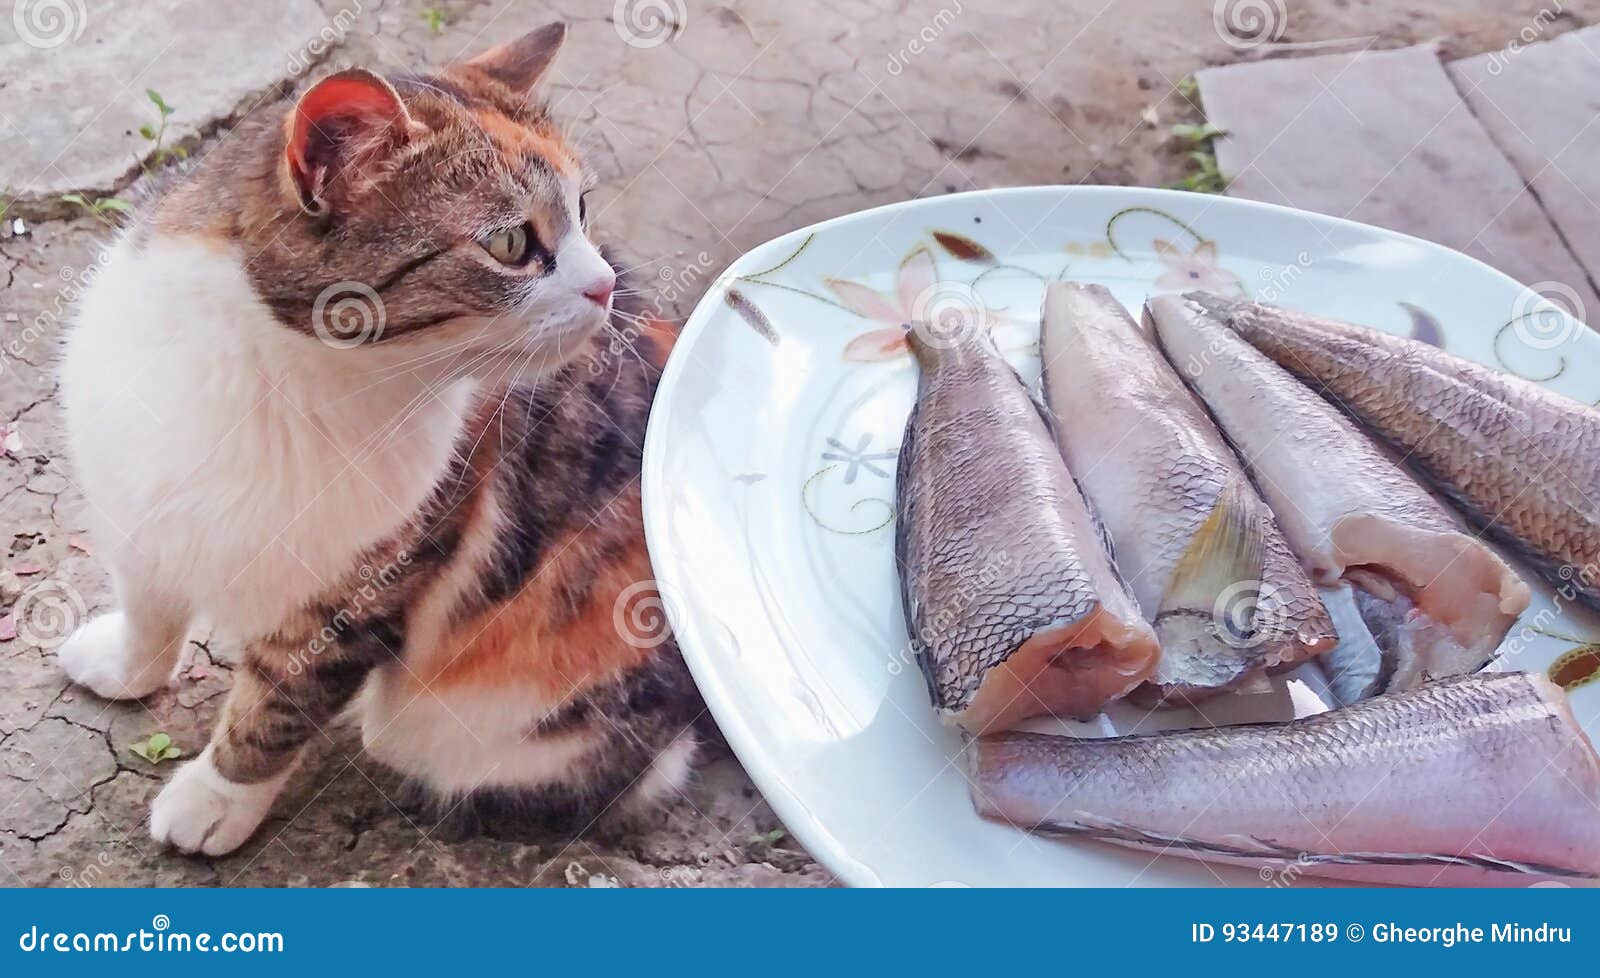 Вода пахнет рыбой. Кот и вонючие носки. Кошка пахнет рыбой. Рыбки с запахом для котят.